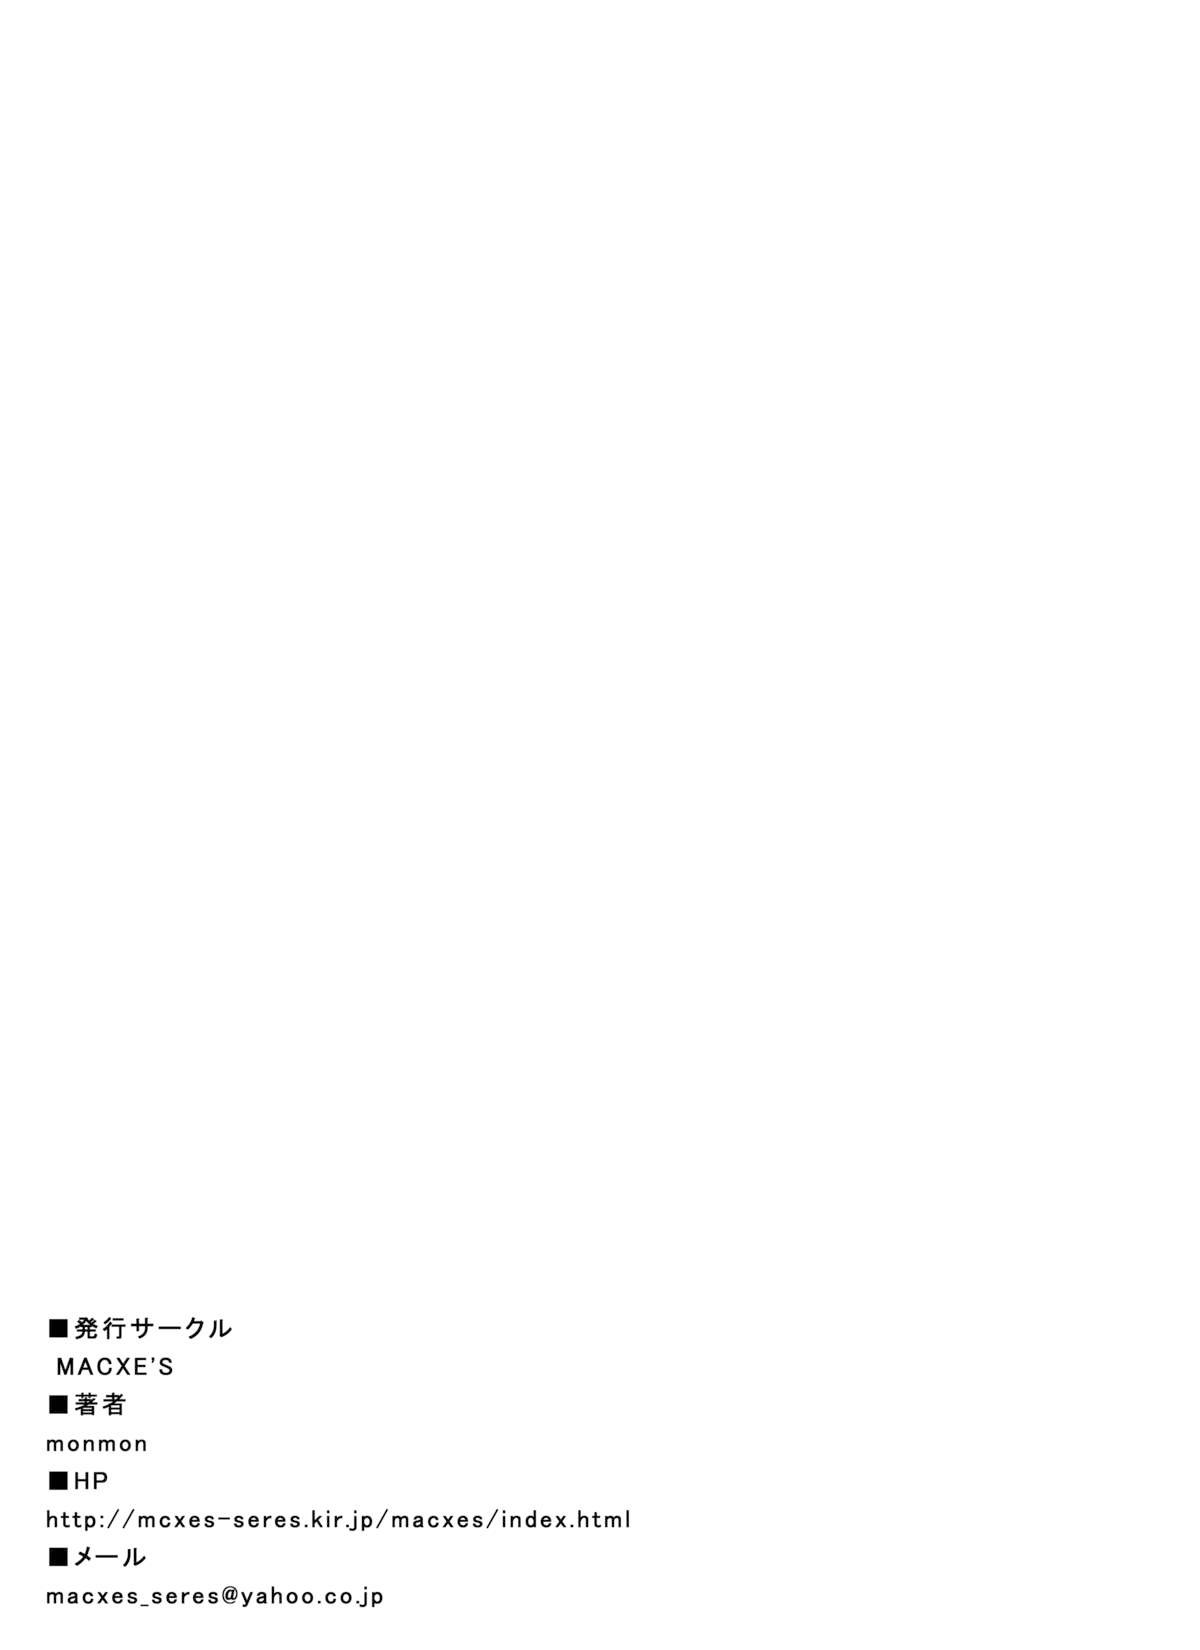 [MACXE'S (monmon)] Mou Hitotsu no Ketsumatsu ~Henshin Heroine Kairaku Sennou Yes!! Precure 5 Hen~ 另一个结局 变身女英雄快乐洗脑 yes!! 光之美少女5篇 第二话 (Yes! PreCure 5) [Chinese] [LLQ个人汉化] 32